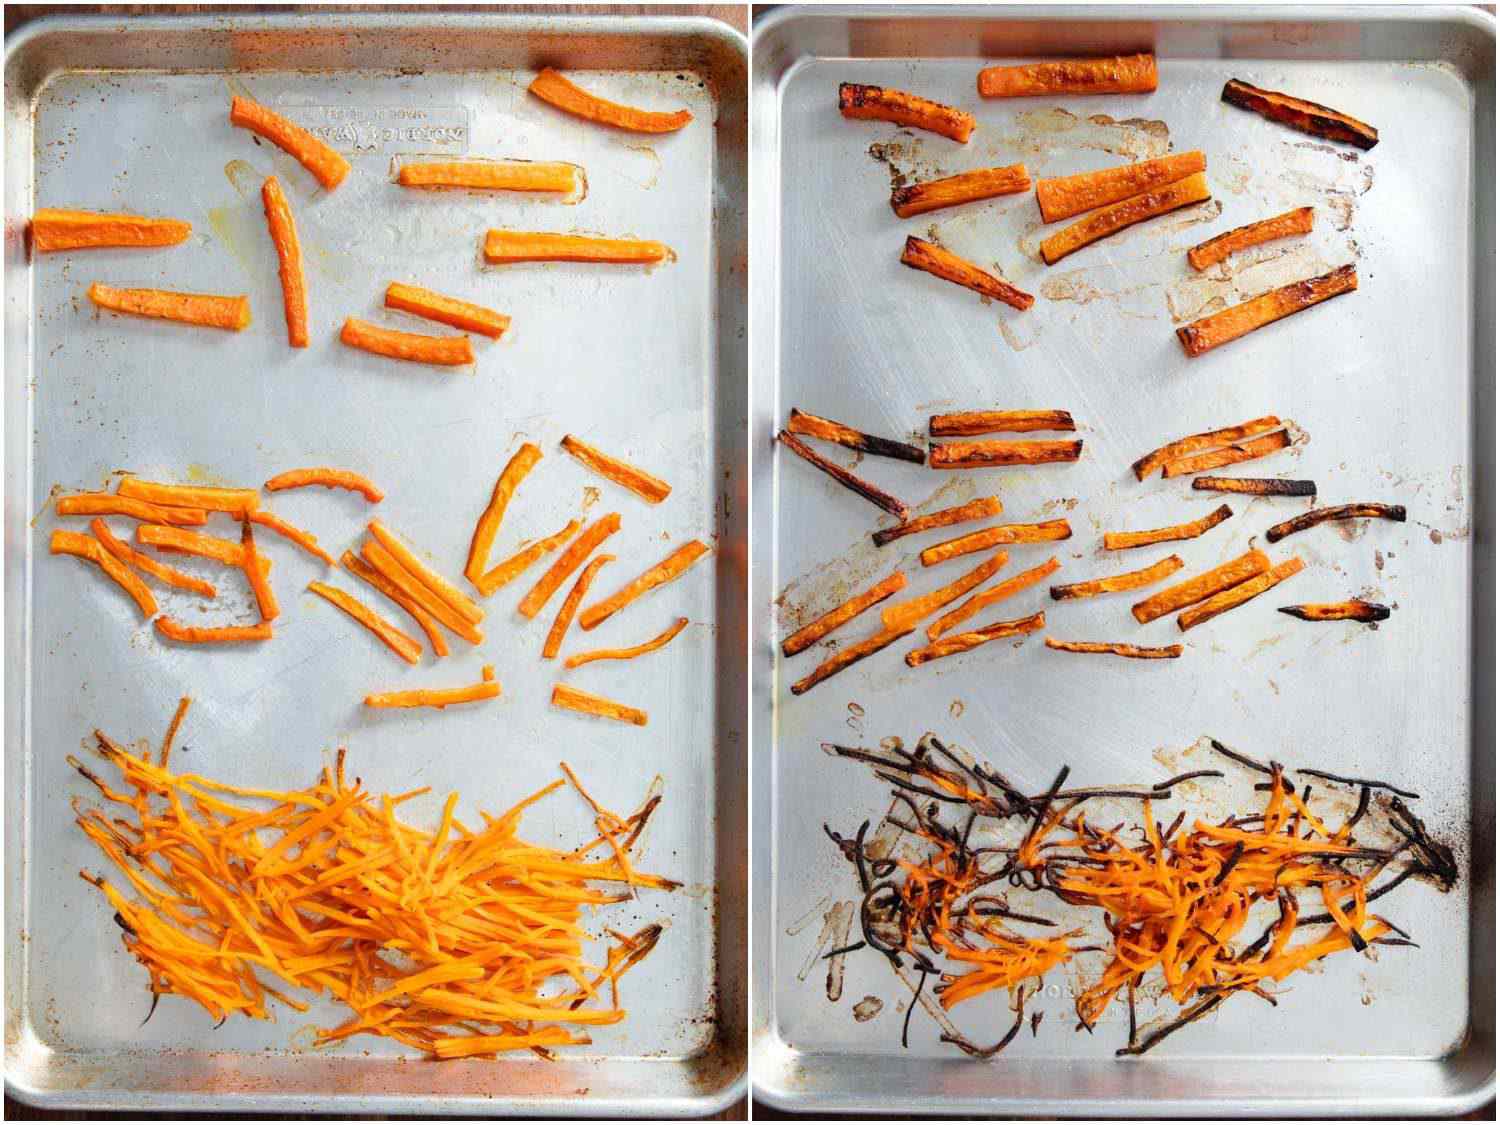 胡萝卜切成不同大小，但在相同的烤箱里，在相同的温度下烹饪的对比。较小的部分烧焦了，而较大的部分还没有变成褐色。